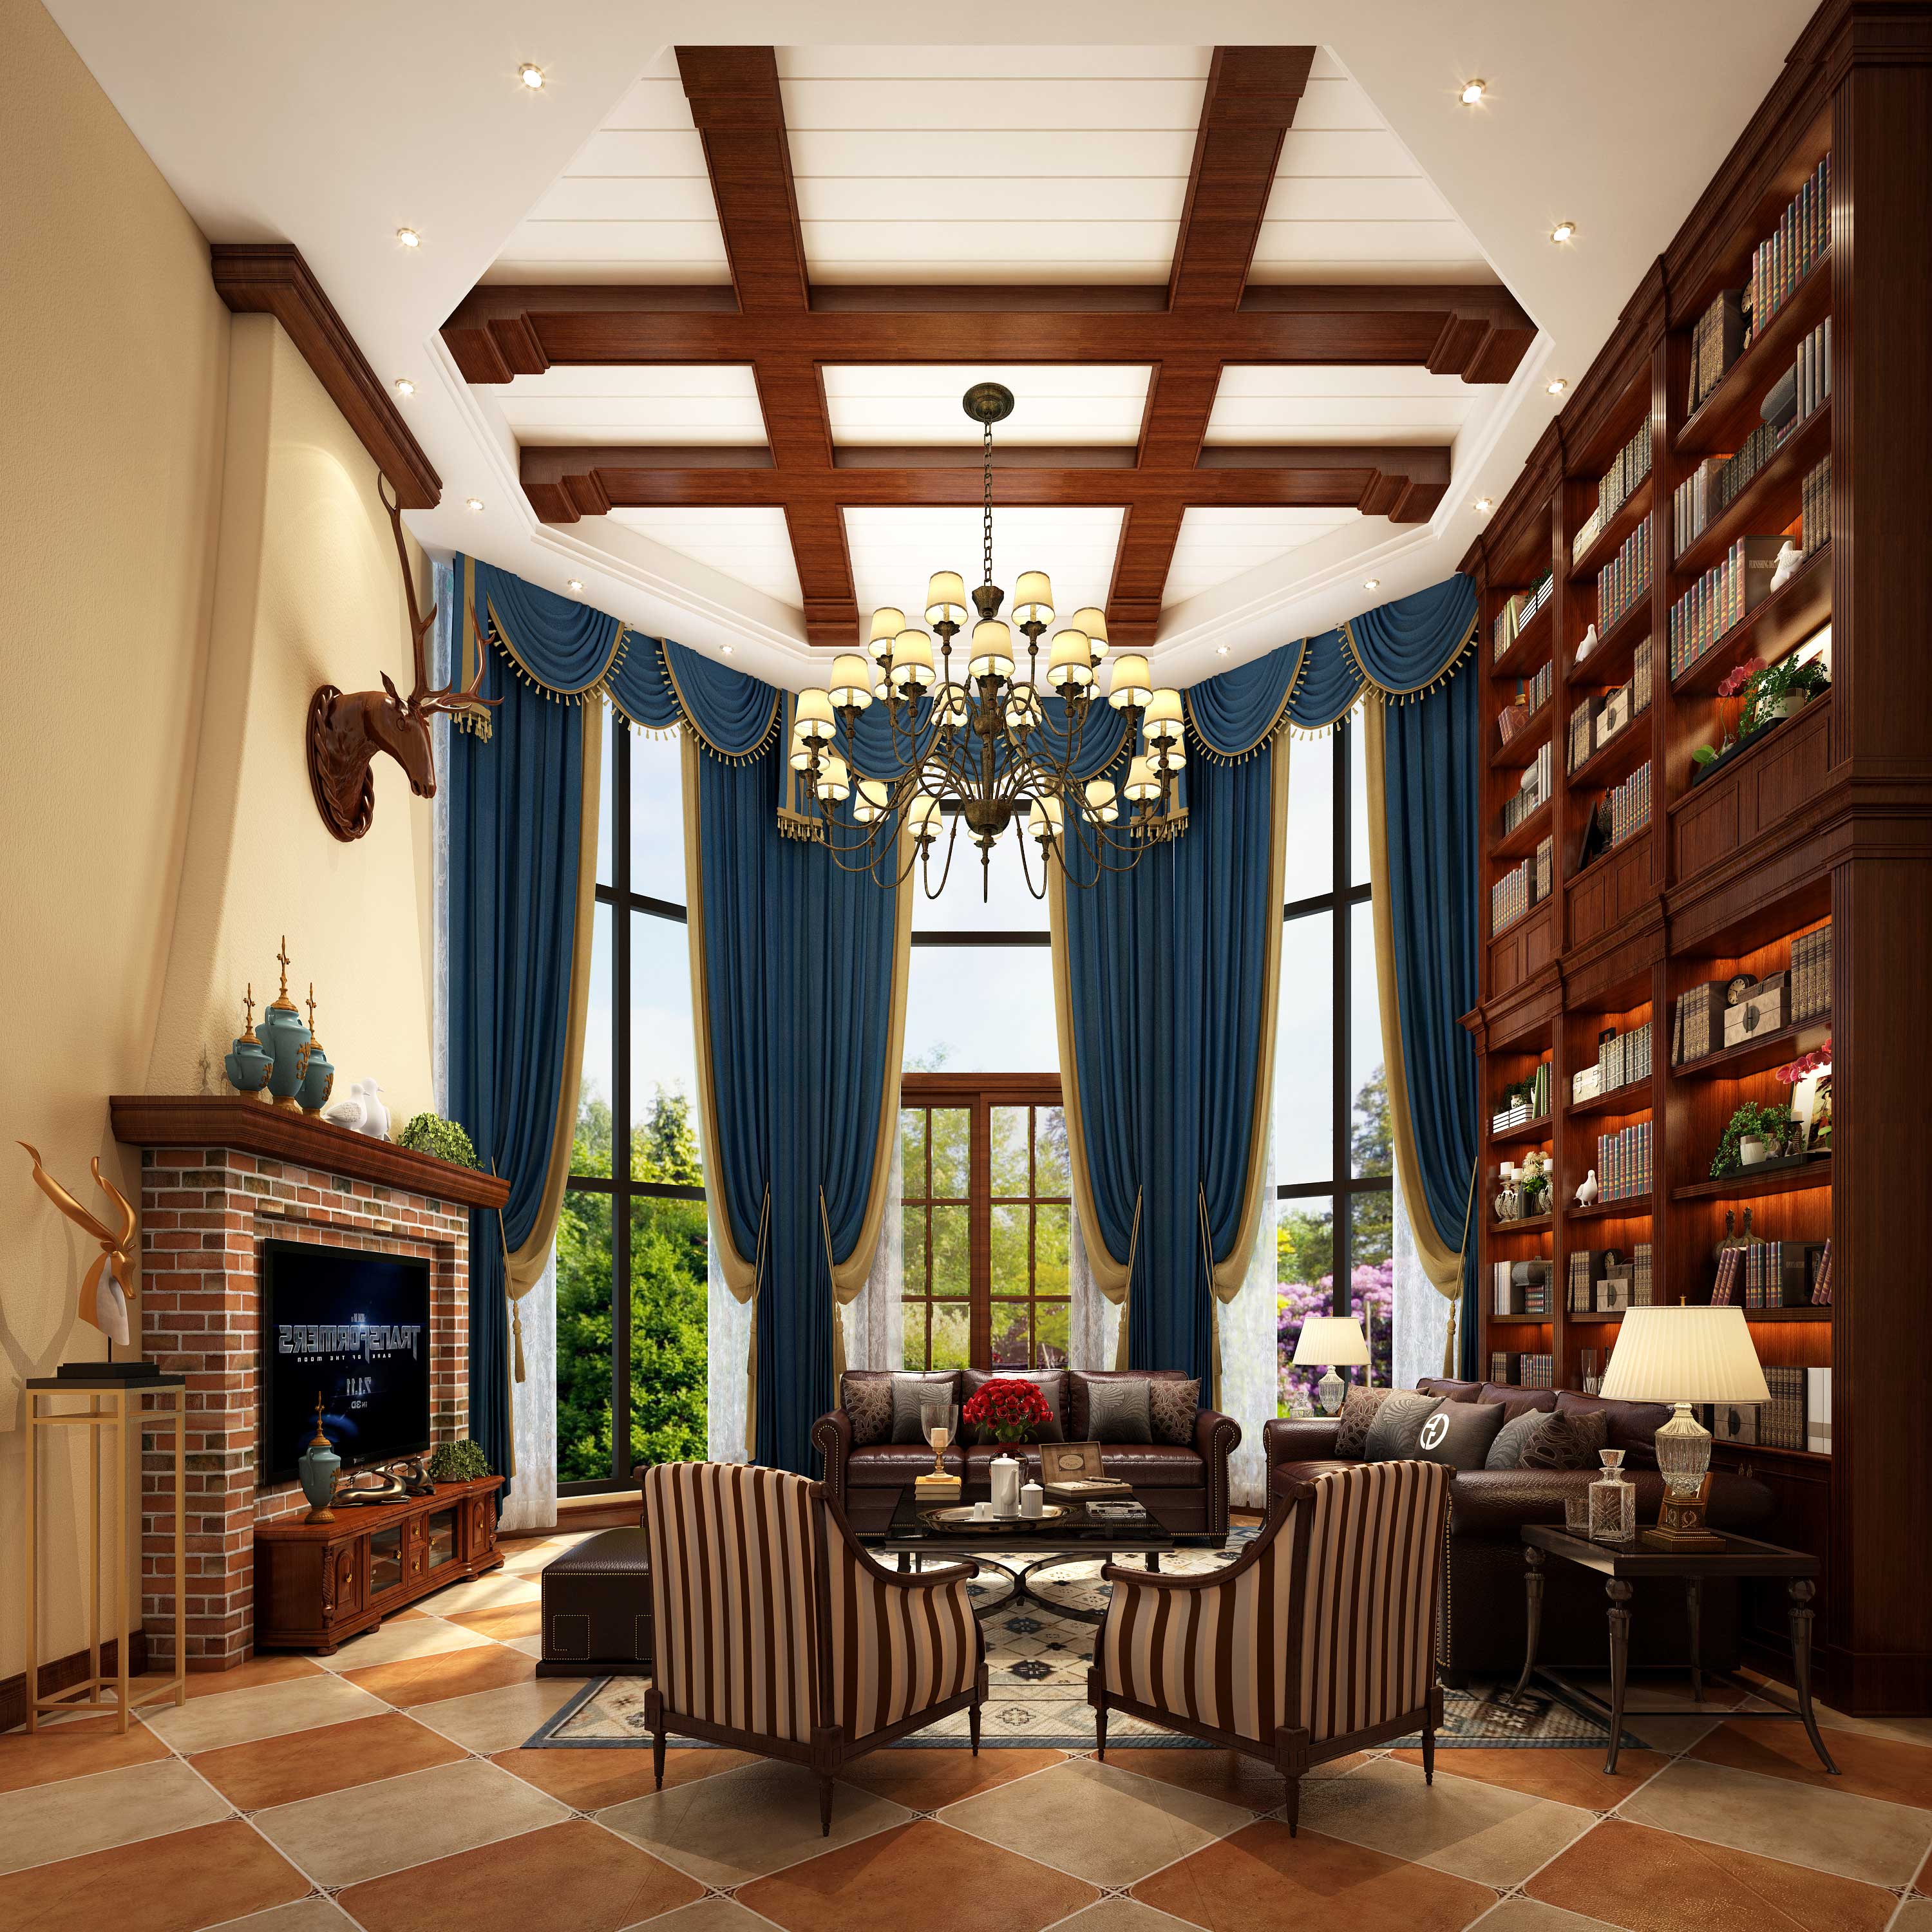 美式风格 别墅 朱平波 收纳 客厅图片来自朱平波在天鹅湖-简爱的分享